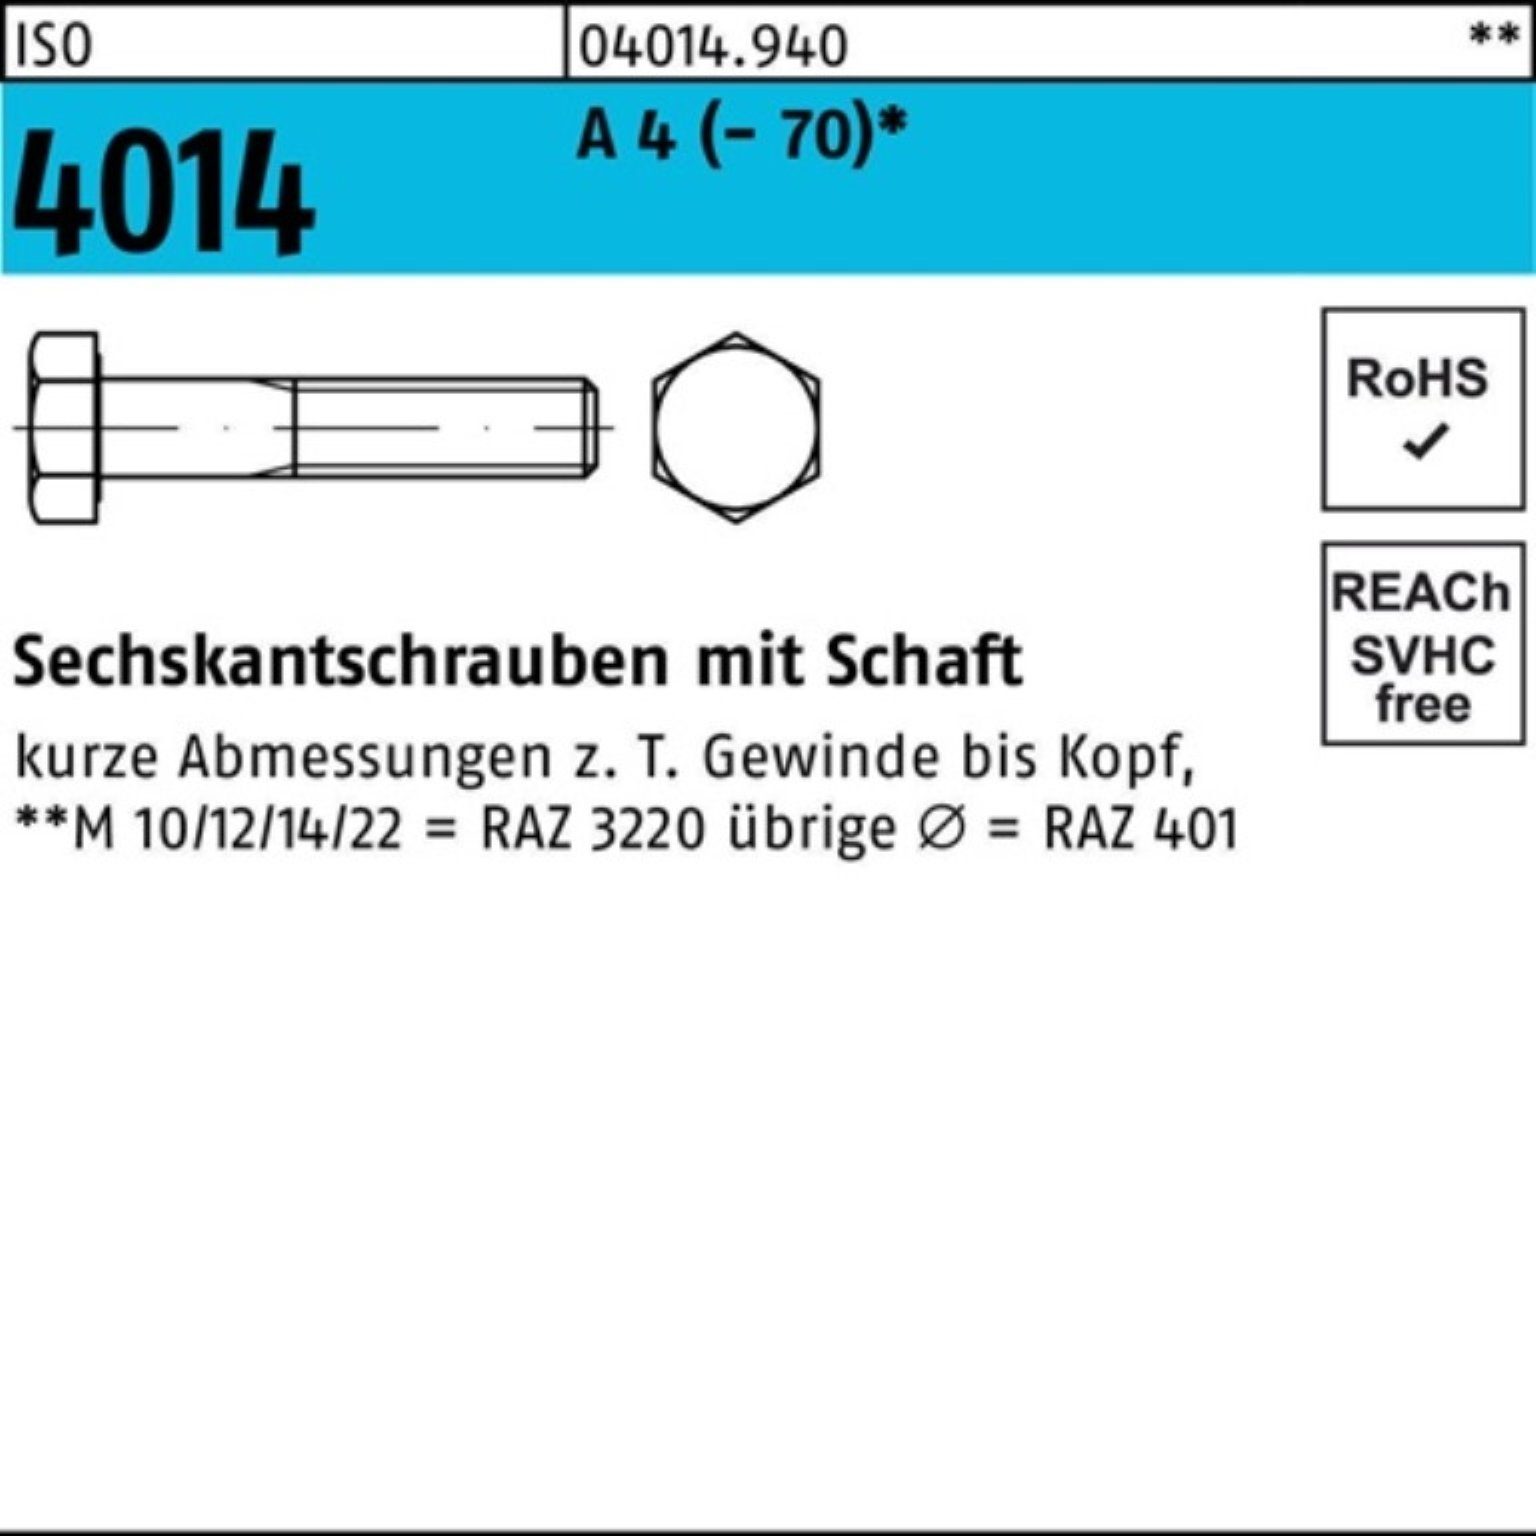 ISO Sechskantschraube 4 M33x Sechskantschraube 100er Bufab 4014 A Stück 230 ISO 1 Pack Schaft